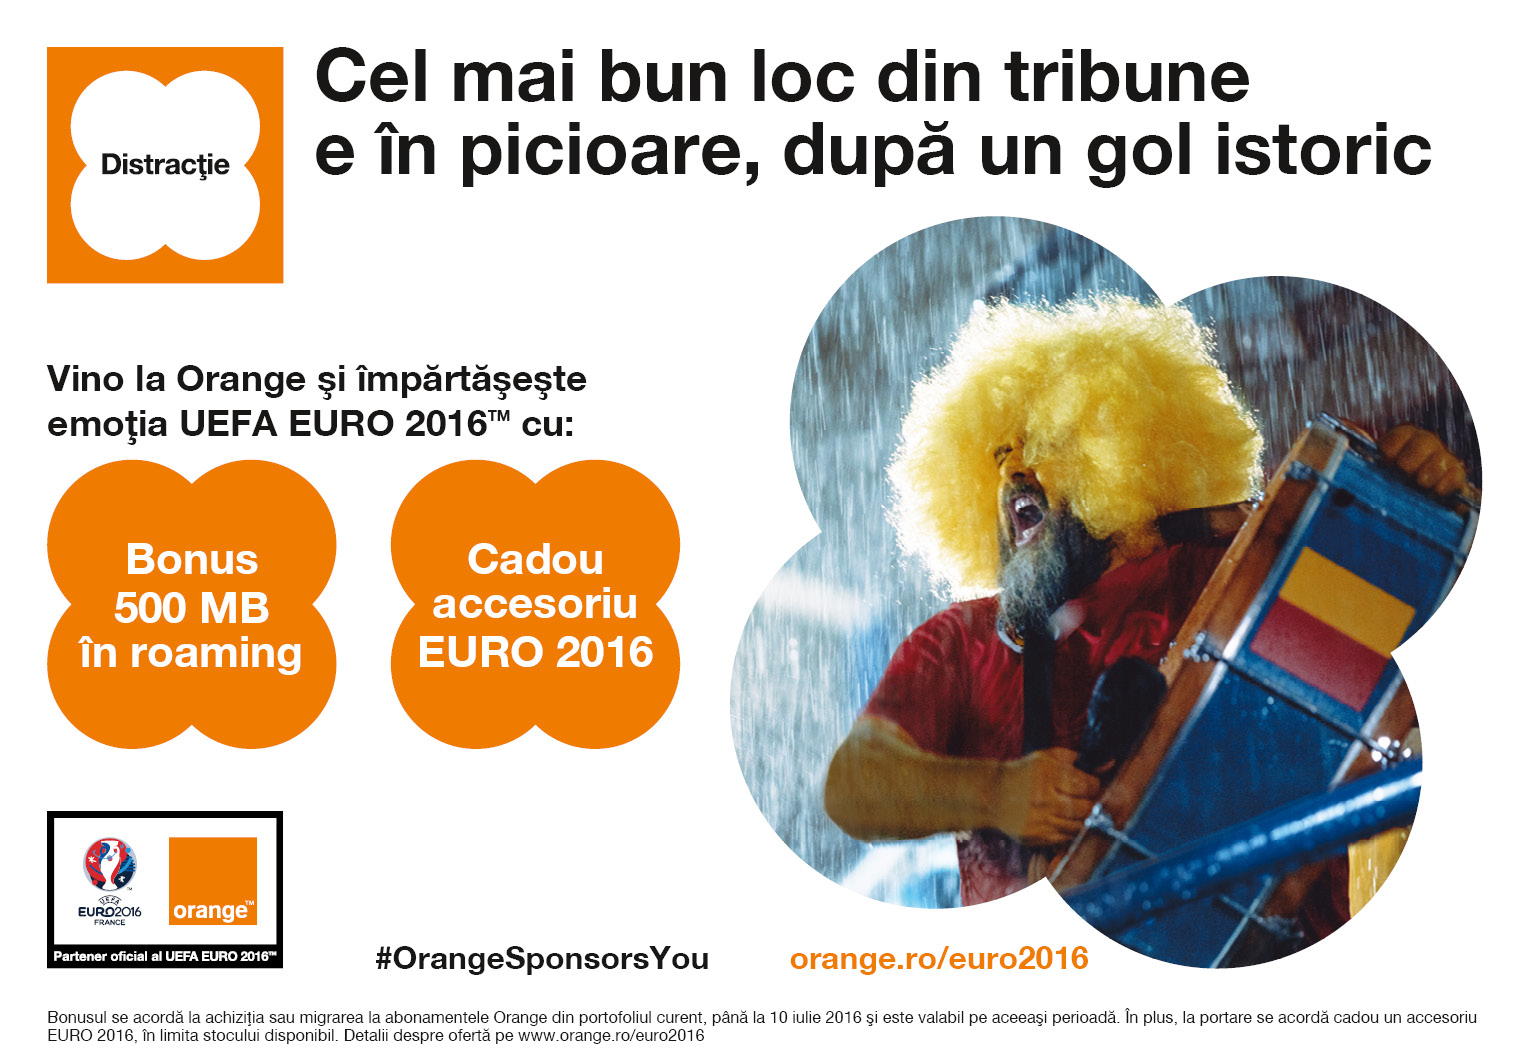 Oferta Orange dedicată UEFA EURO 2016 aduce noi surprize